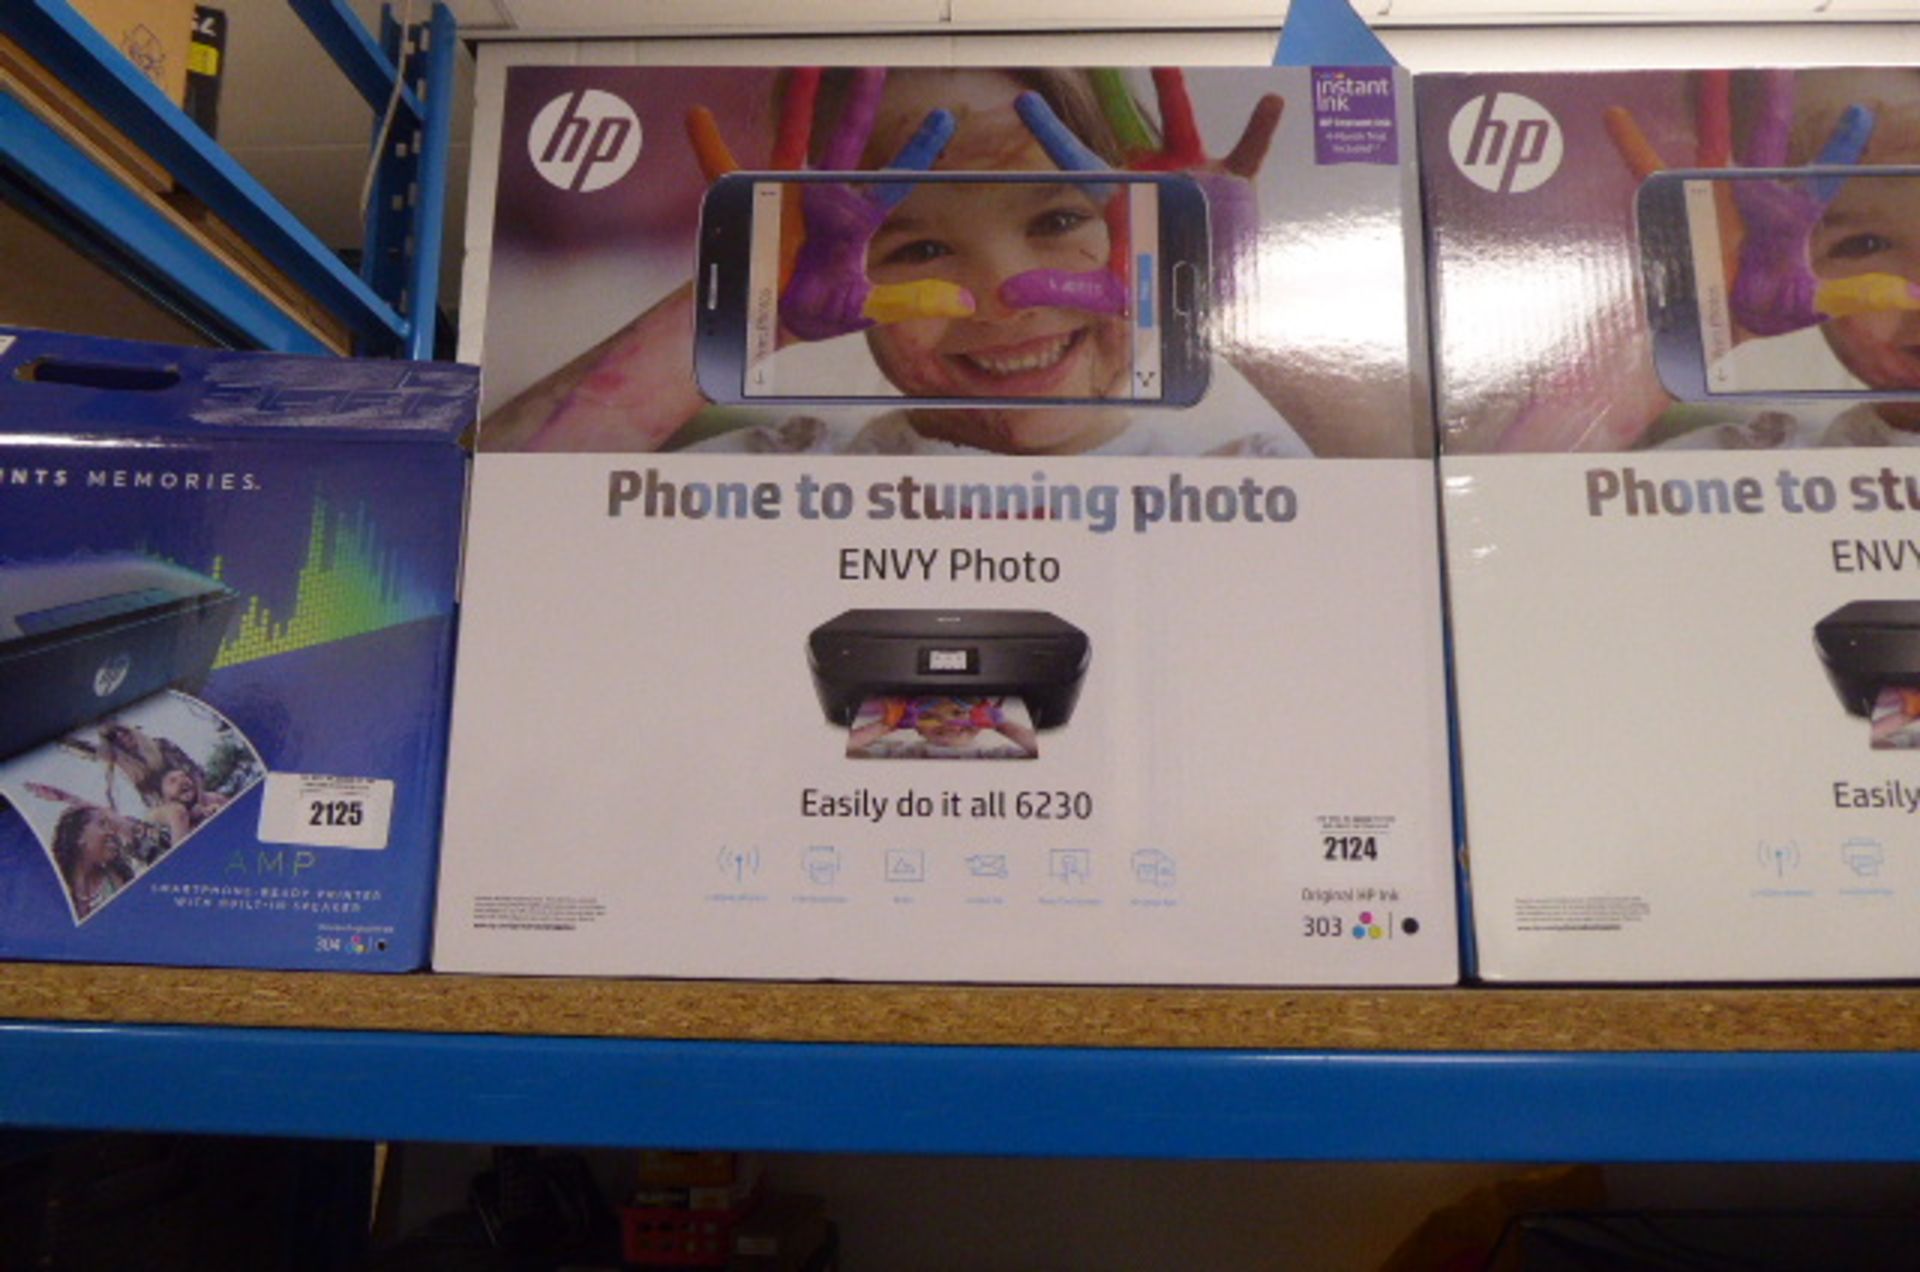 HP Envy Photo 6230 printer in box